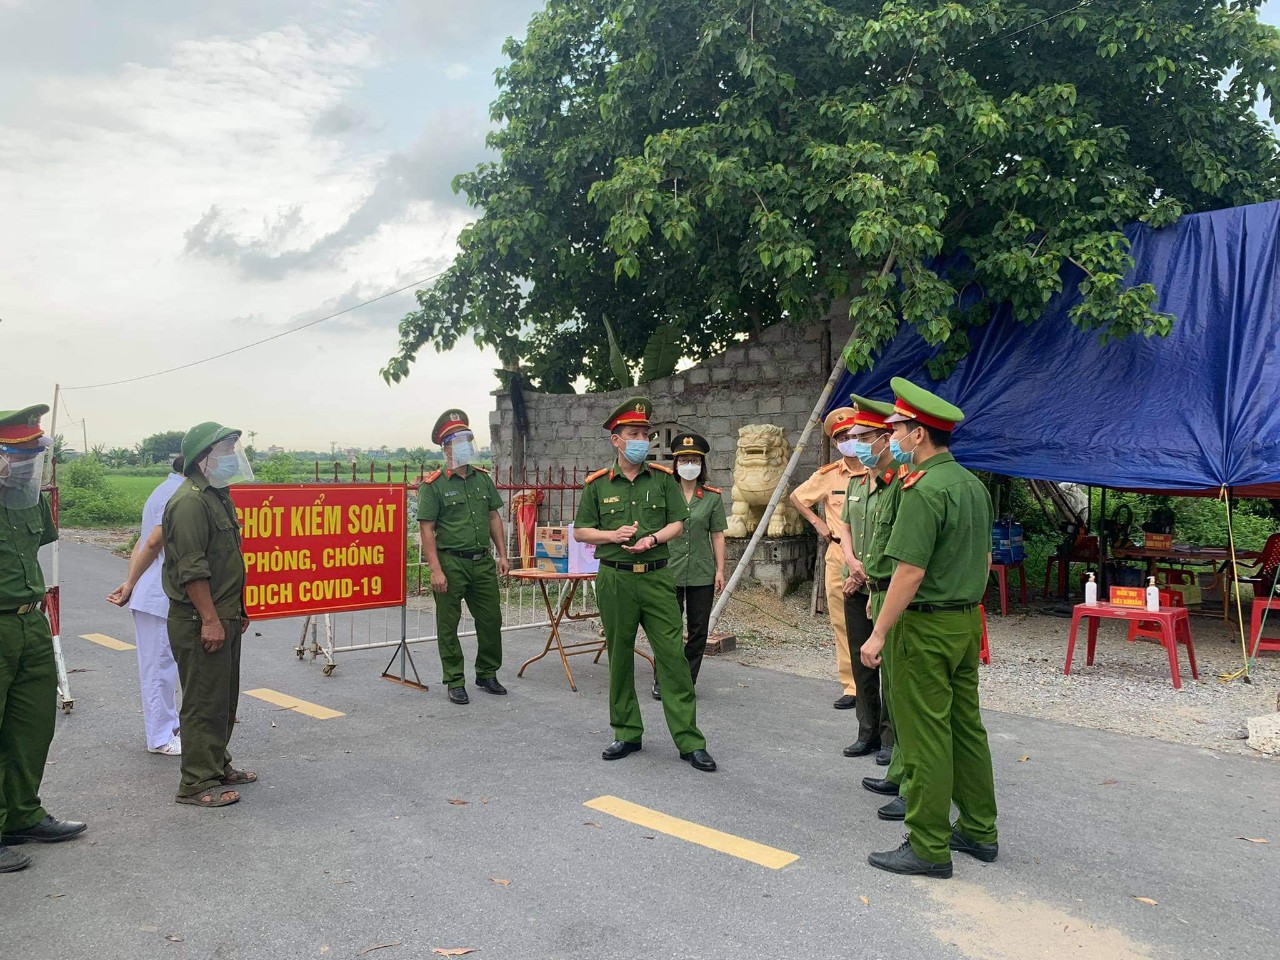 Nam Định: Công an huyện Vụ Bản vào cuộc xử lý nghiêm các trường hợp vi phạm trong phòng, chống dịch Covid - 19